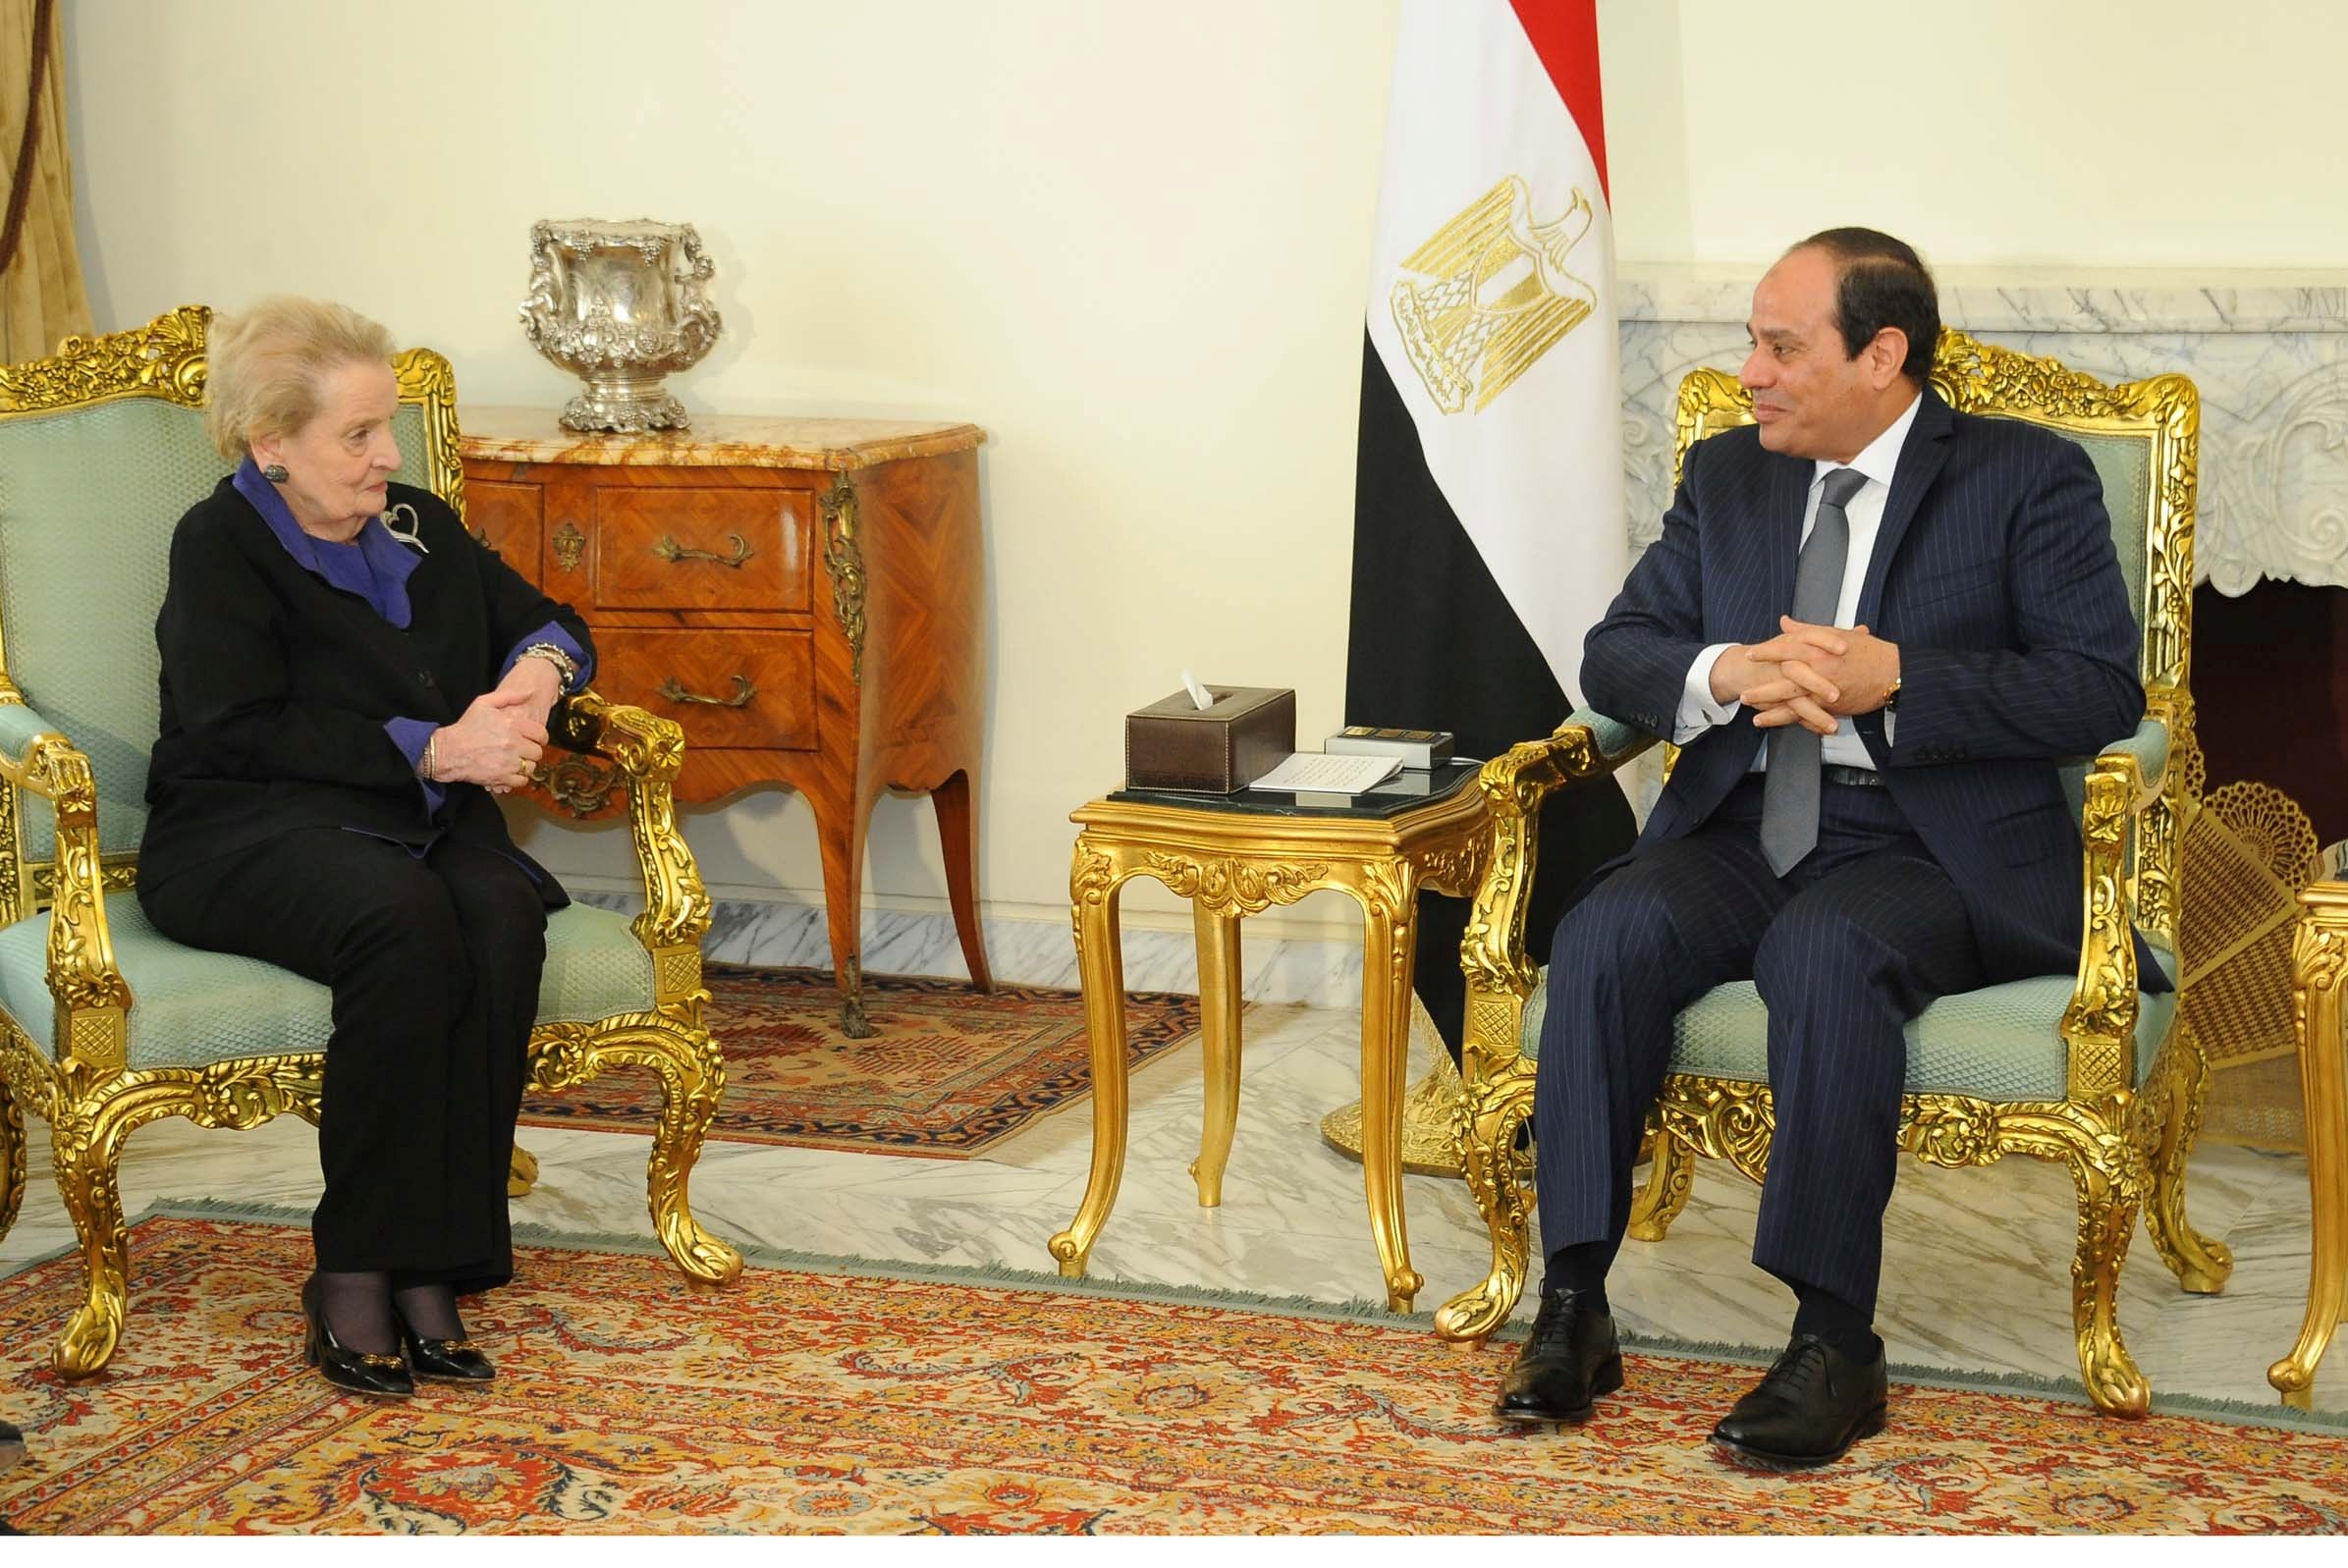 السيسي: التحديات الراهنة تُحتم على القاهرة وواشنطن تعميق علاقاتهما الاستراتيجية